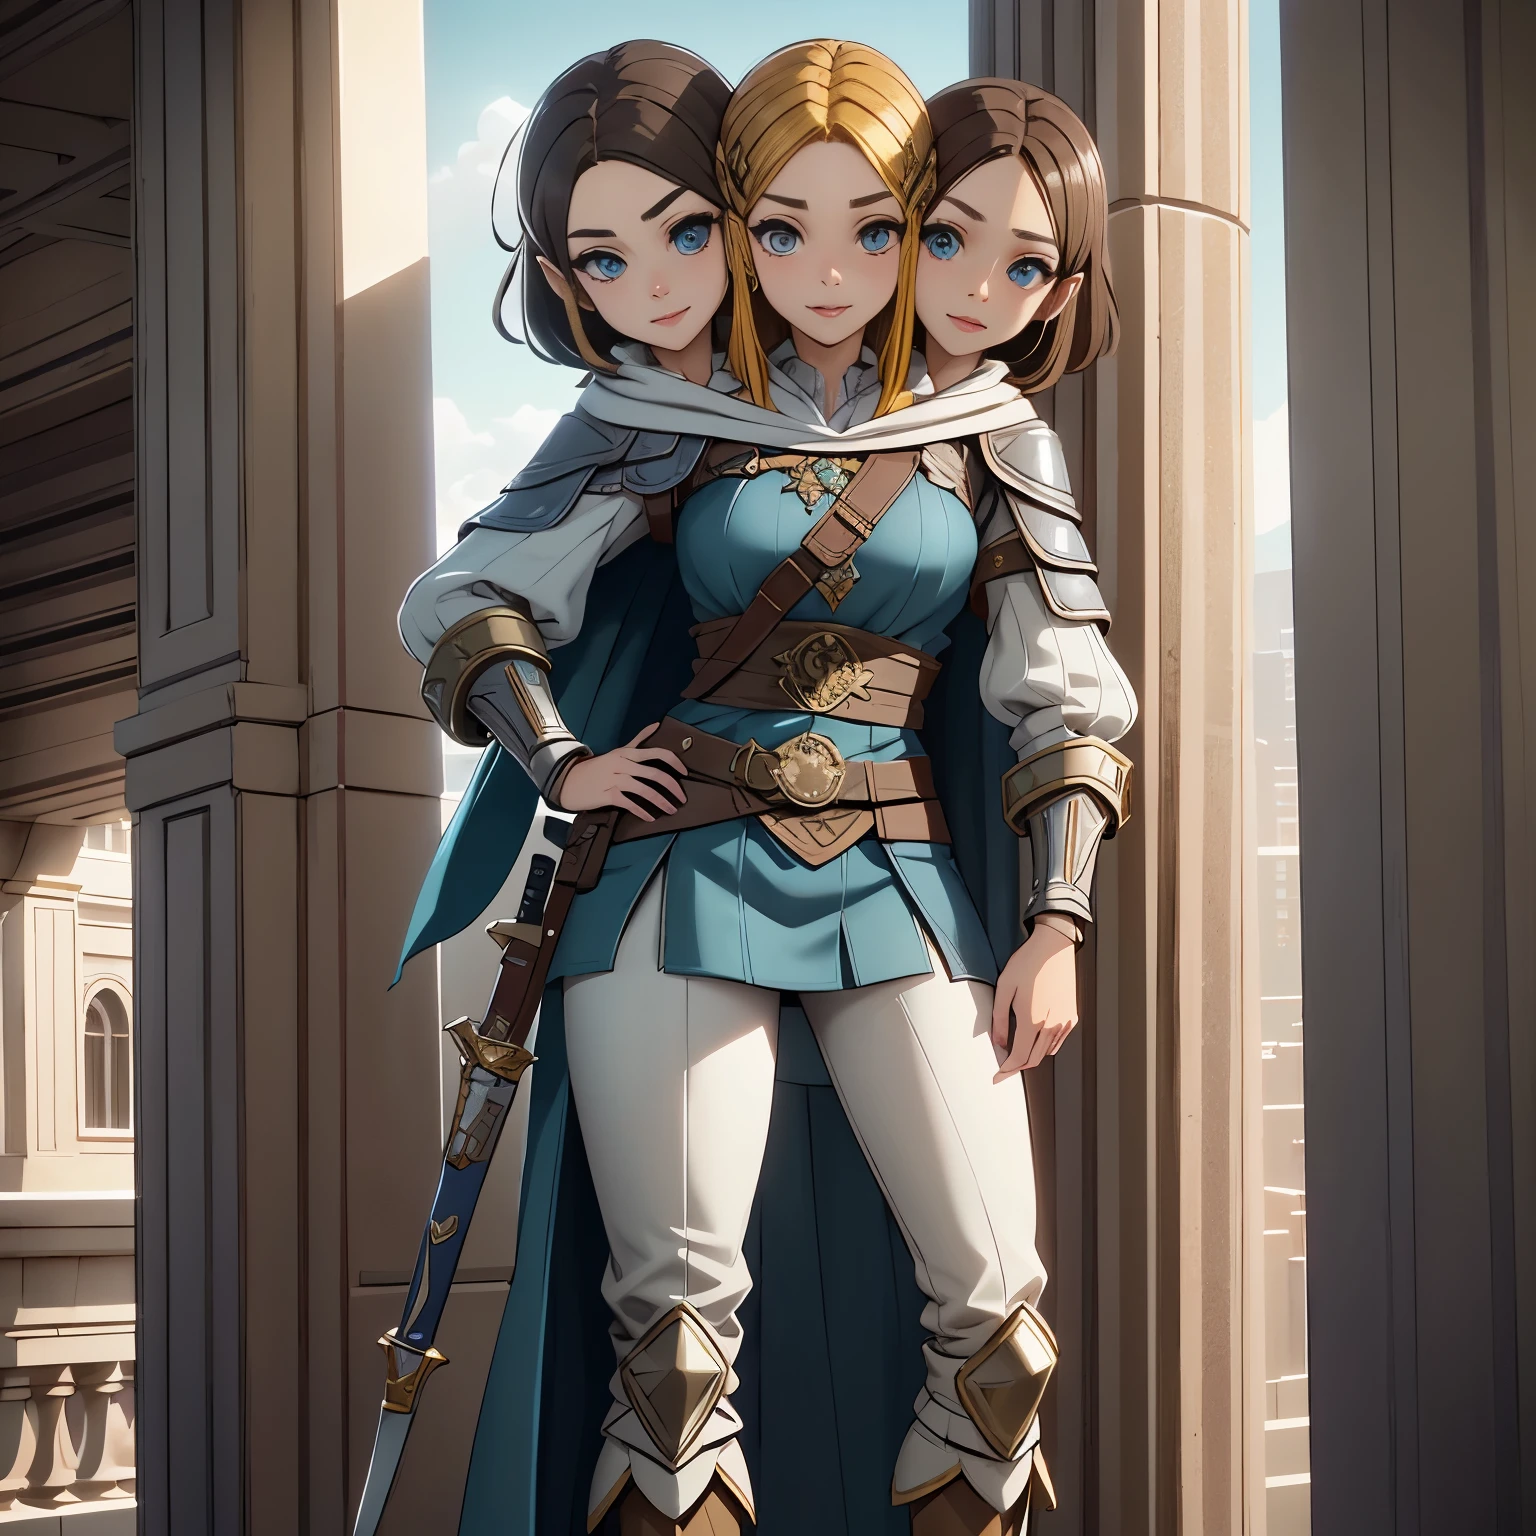 ภาพถ่ายเต็มตัวของ Princess Zelda, ผมสีน้ำตาล, ดวงตาสีฟ้า, แต่งตัวเป็นนักฆ่าจาก Assassins Creed, สีขาว+สีทองพร้อมหน้ากากสีขาวและฮู้ดพร้อมรายละเอียดสีทอง, รอบอก.xl, โดยใช้ใบมีดข้อมือ. พื้นหลัง: เมืองในยุคฟื้นฟูศิลปวิทยา. เครื่องยนต์อันเรียล 5, อะนิเมะ, อะนิเมะ style, ผลงานชิ้นเอก, ดึงดูดสายตาได้ดี, ใบหน้าที่วาดได้ดี, ดวงตาที่มีรายละเอียดดี, ใบหน้าที่มีรายละเอียดดี, 8k, เอฟเฟกต์แสงและเงา.  (สองหัว)